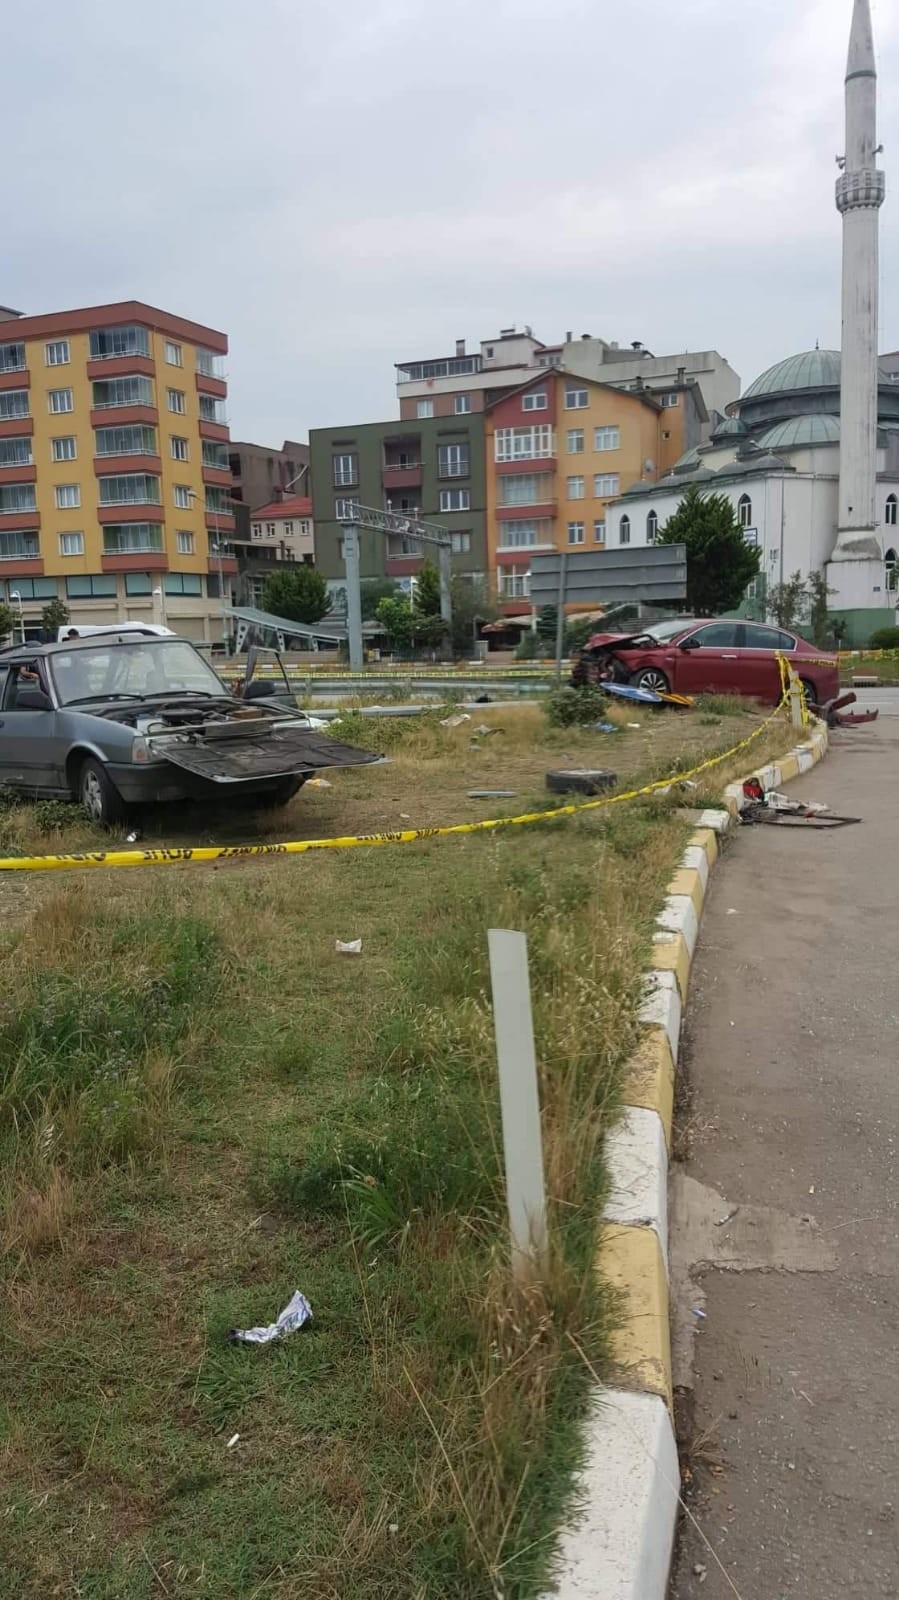 Trabzon Plakalı iki araç Giresun'da çarpıştı - 1 Ölü 2 yaralı